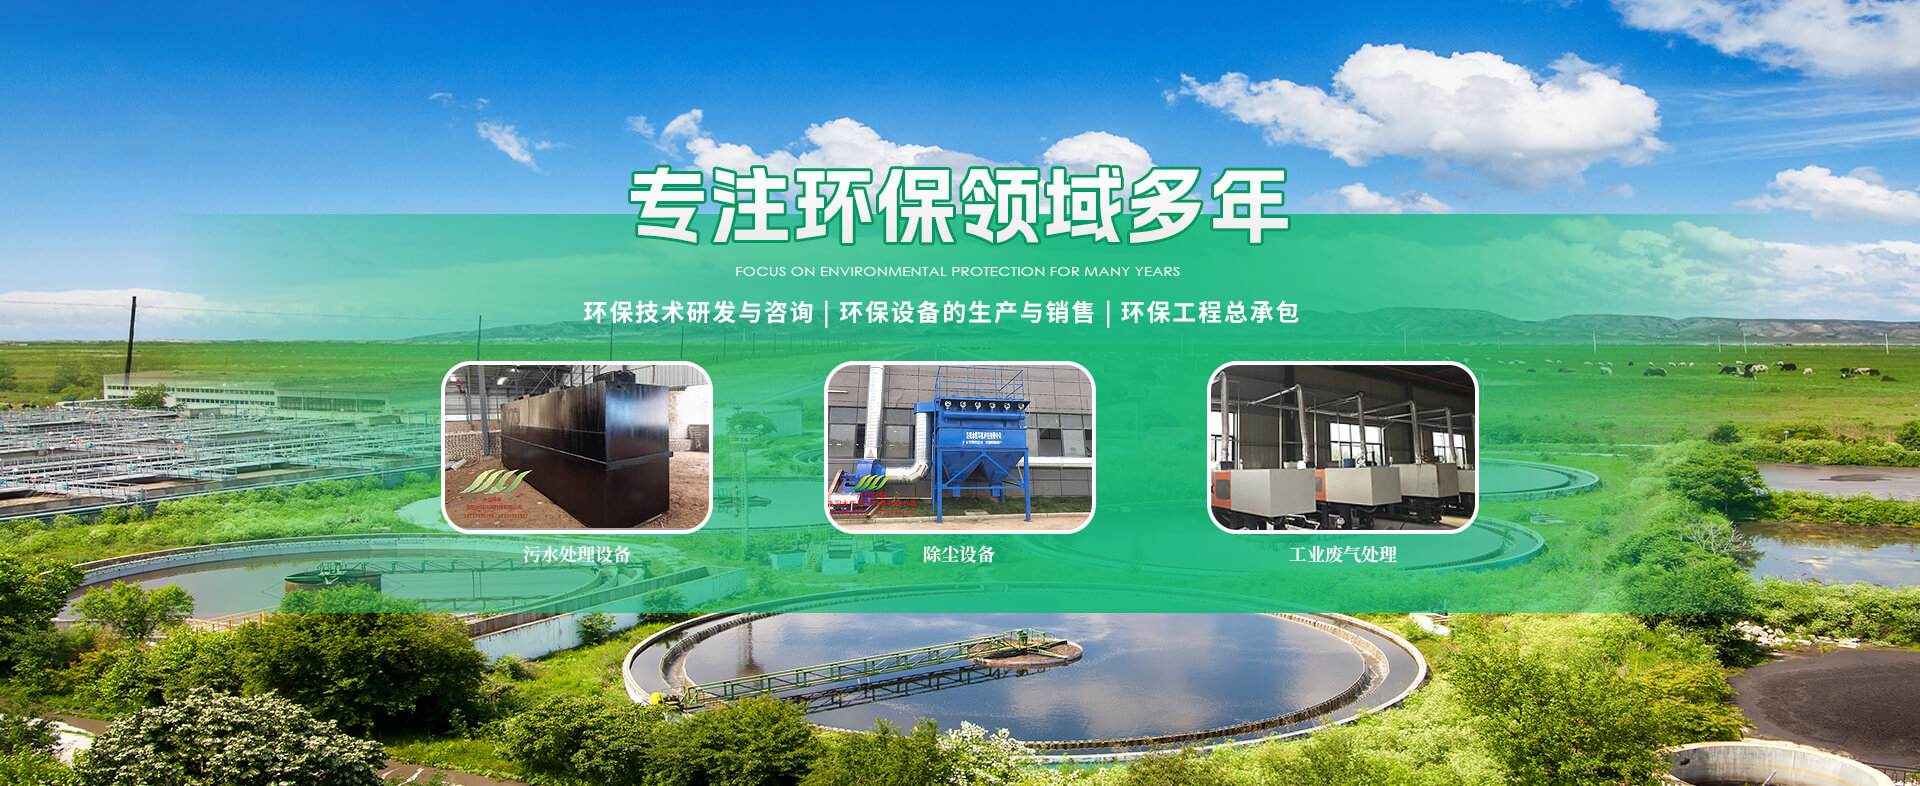 污水处理设备-一体化污水处理设备-洛阳水佳环保